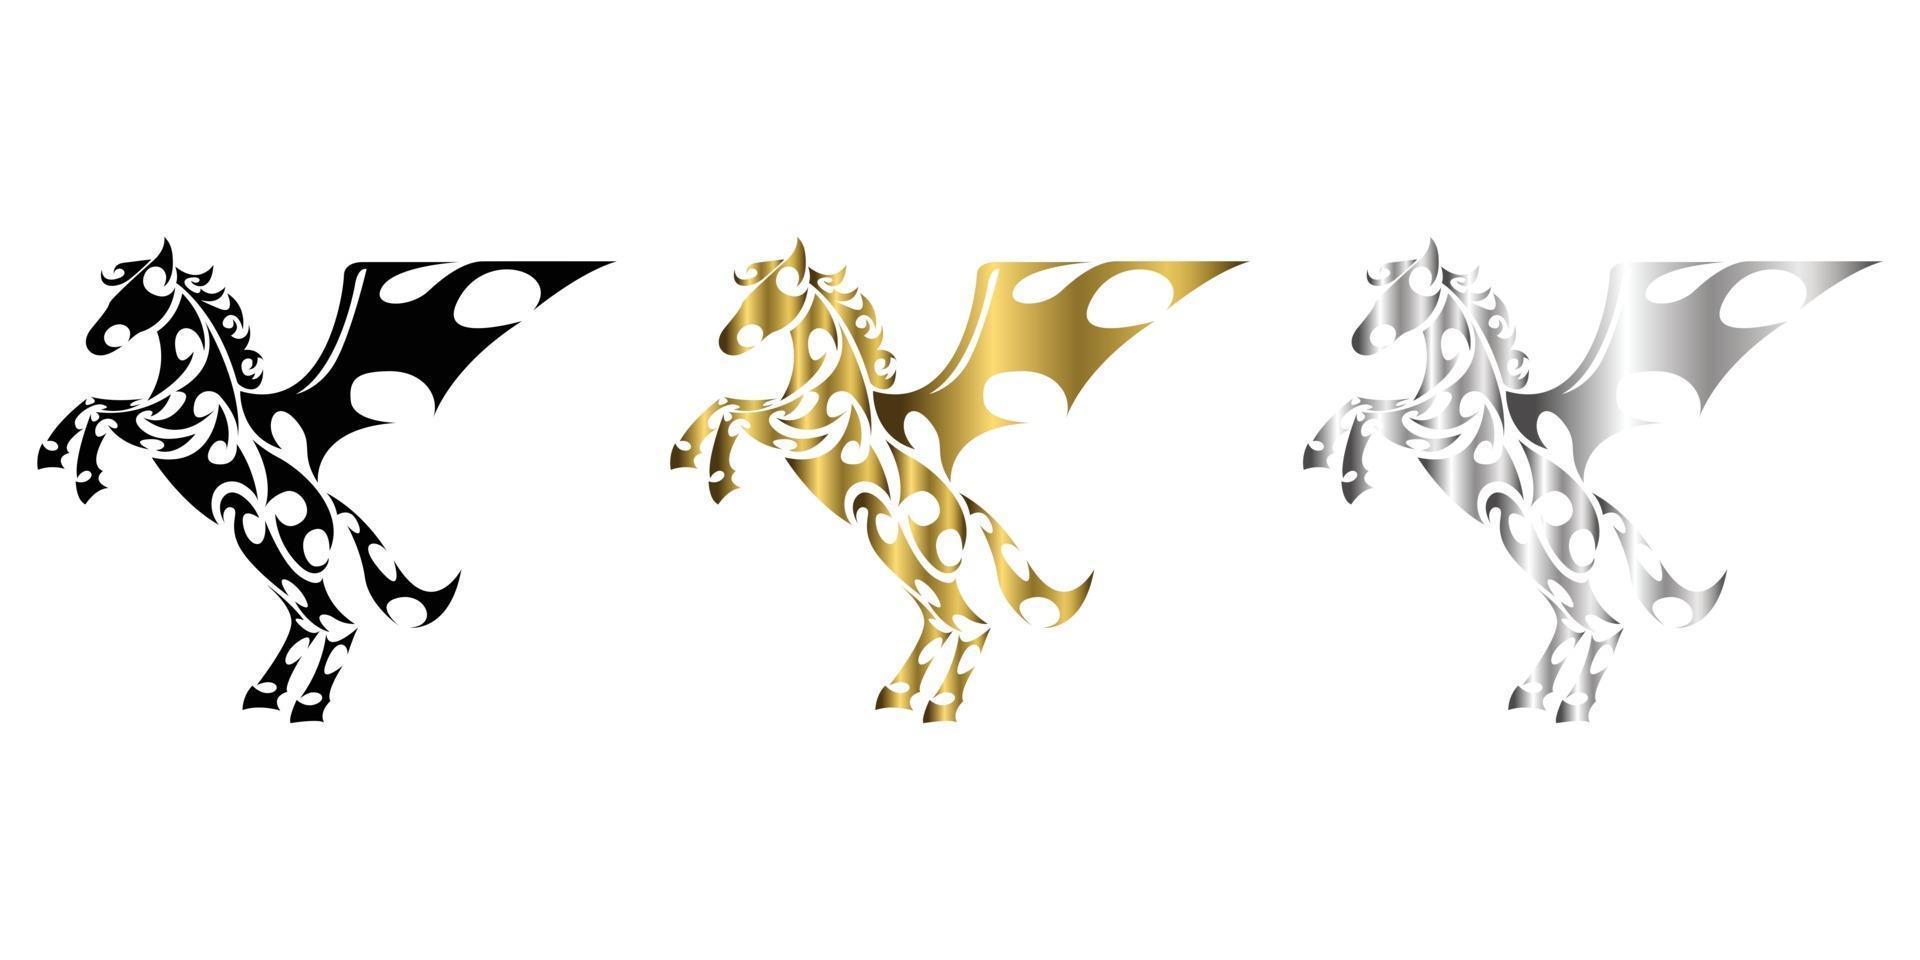 três cores preto ouro prata linha arte vetorial de cavalo com as patas dianteiras levantadas adequadas para uso como decoração ou logotipo vetor